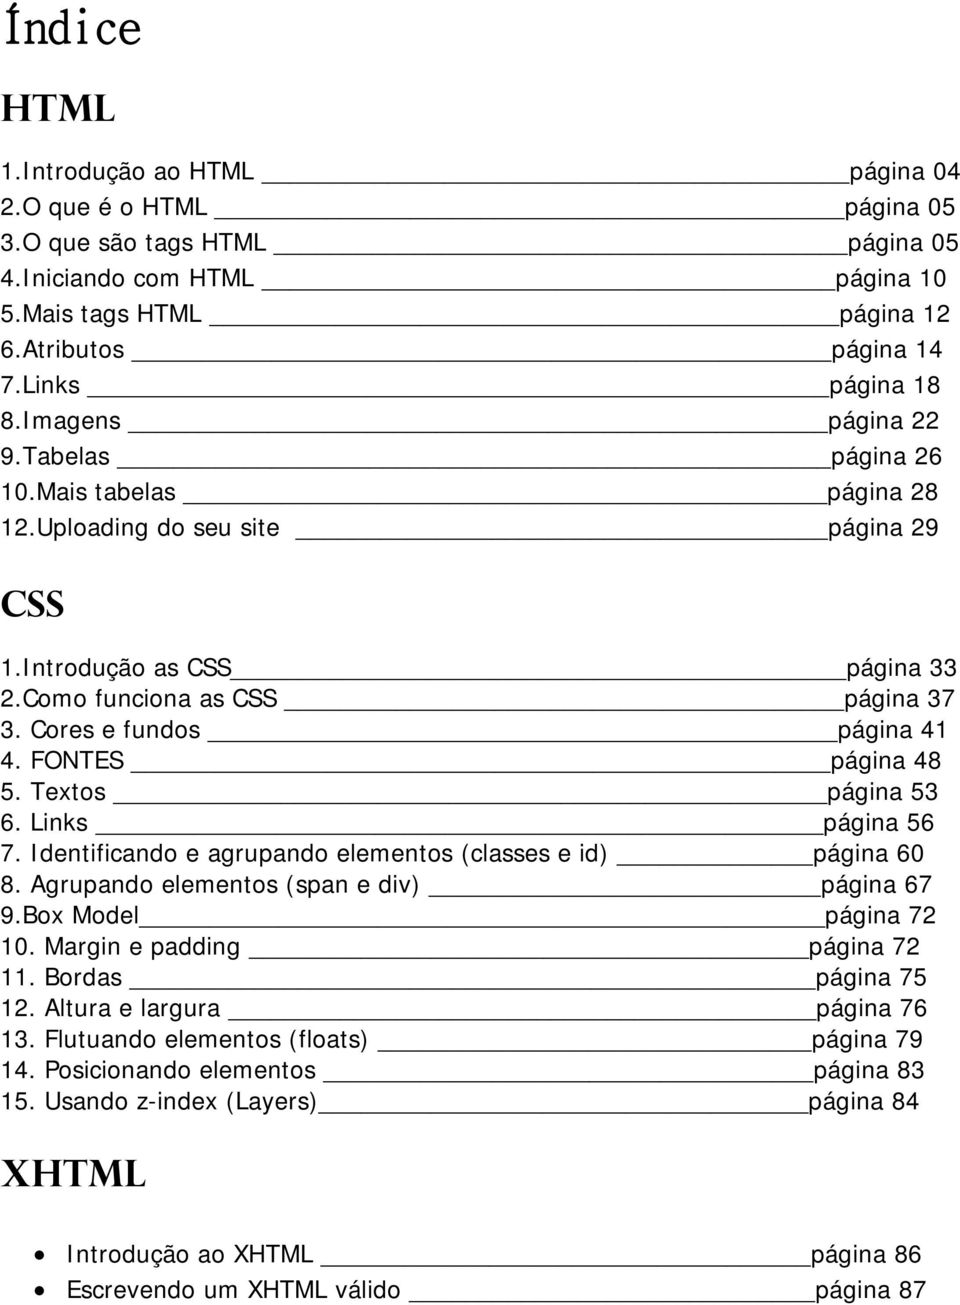 Cores e fundos página 41 4. FONTES página 48 5. Textos página 53 6. Links página 56 7. Identificando e agrupando elementos (classes e id) página 60 8. Agrupando elementos (span e div) página 67 9.